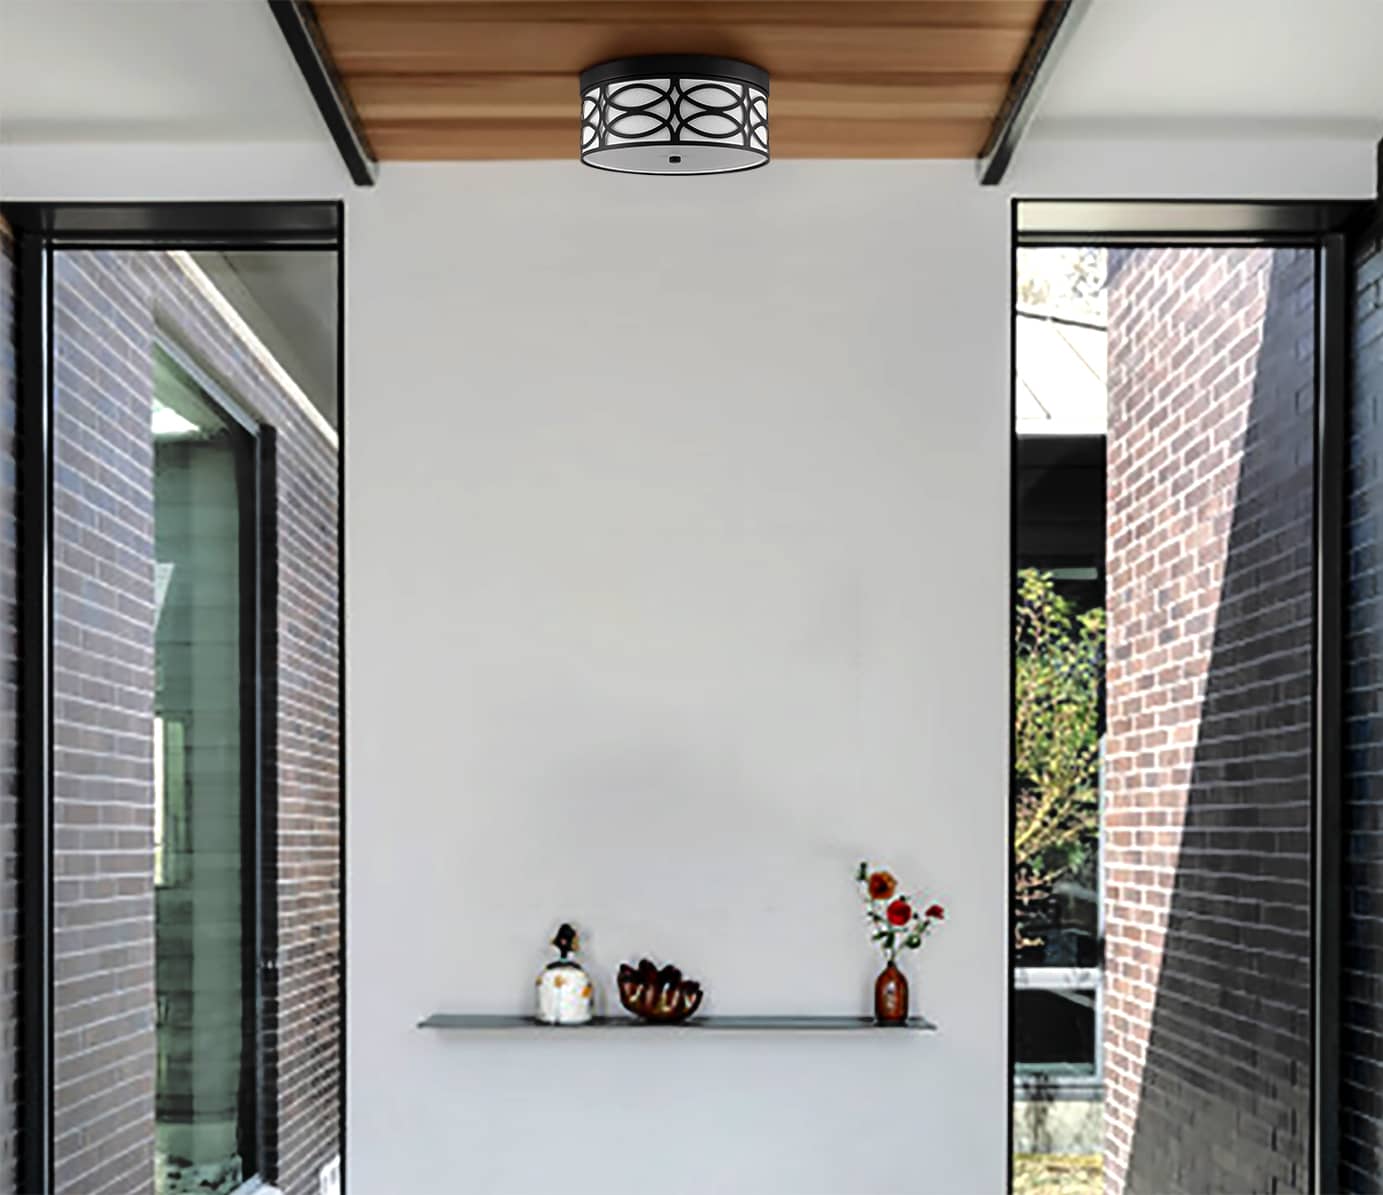 Modern LED Flush Mount Ceiling Light Black Linen Drum Shade Light Fixture Dimmable